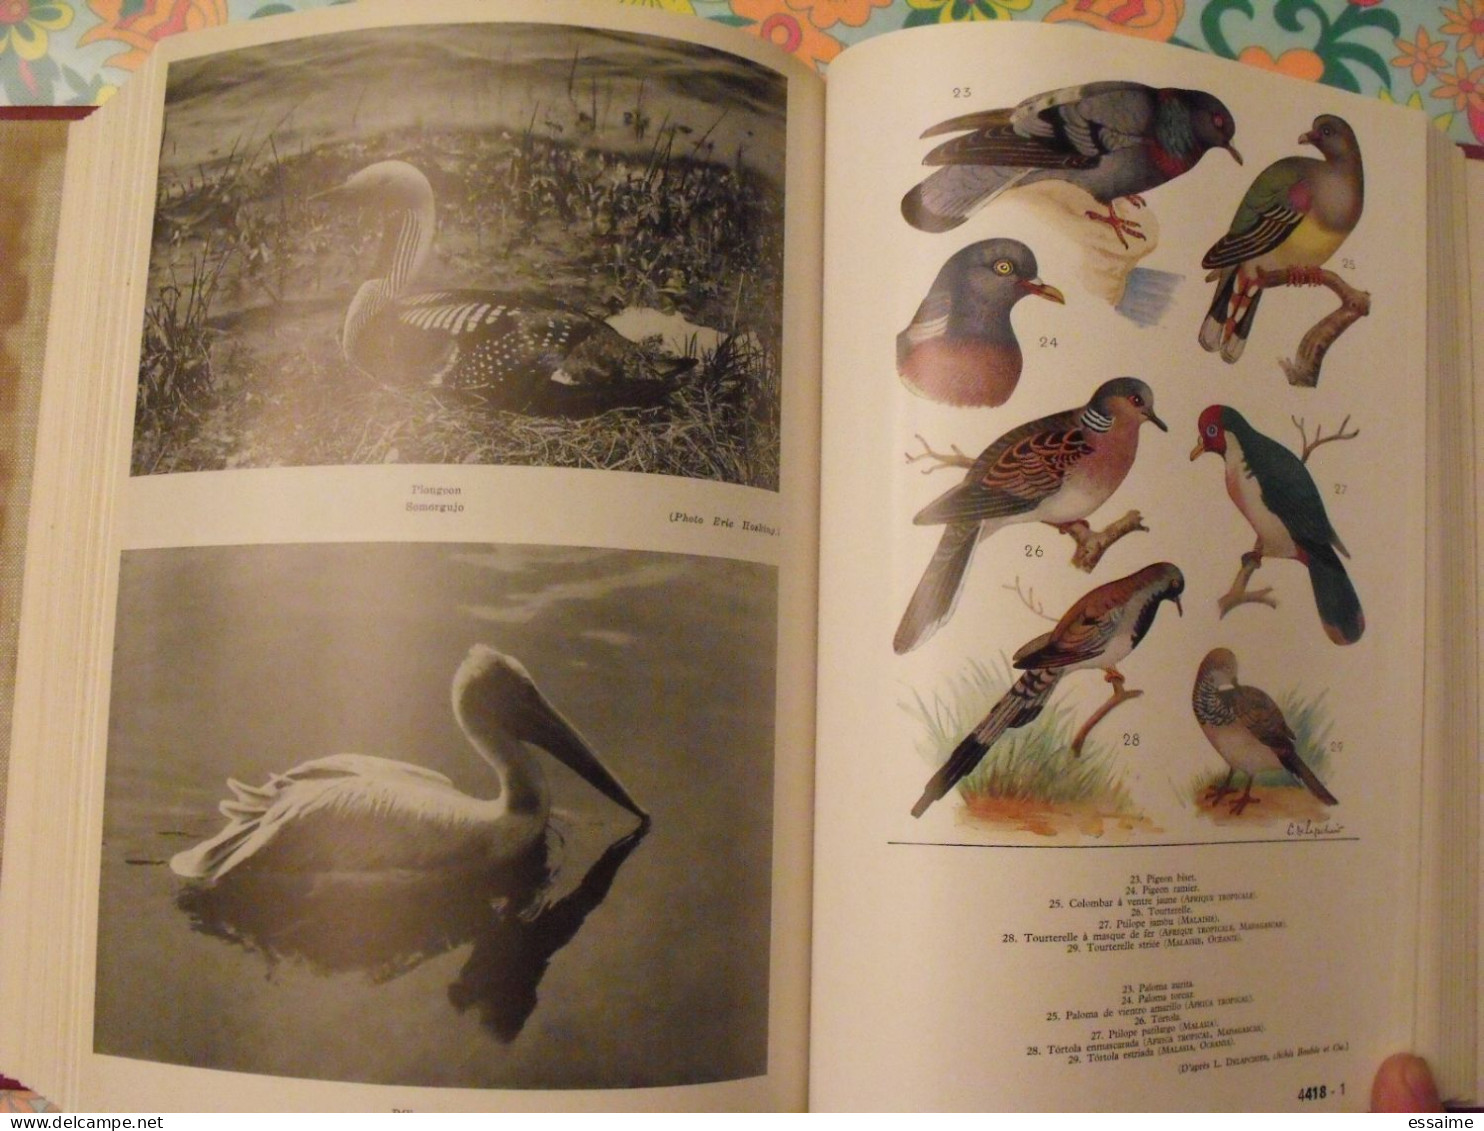 encyclopédie Clartés. Etres vivants. végétaux et animaux. 1976. très illustré